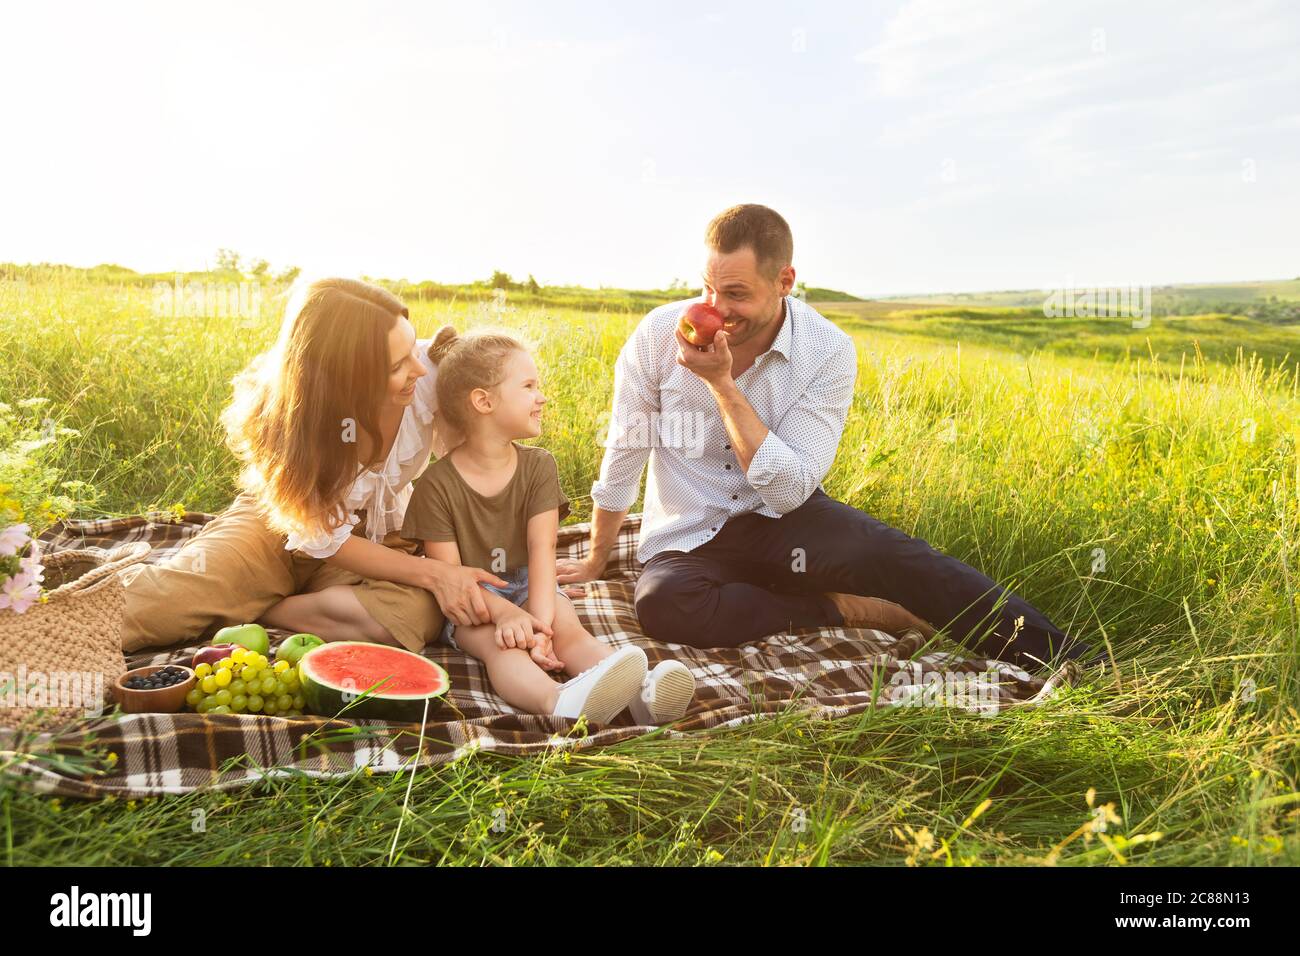 Buona famiglia che gioca con frutta in un picnic all'aperto Foto Stock